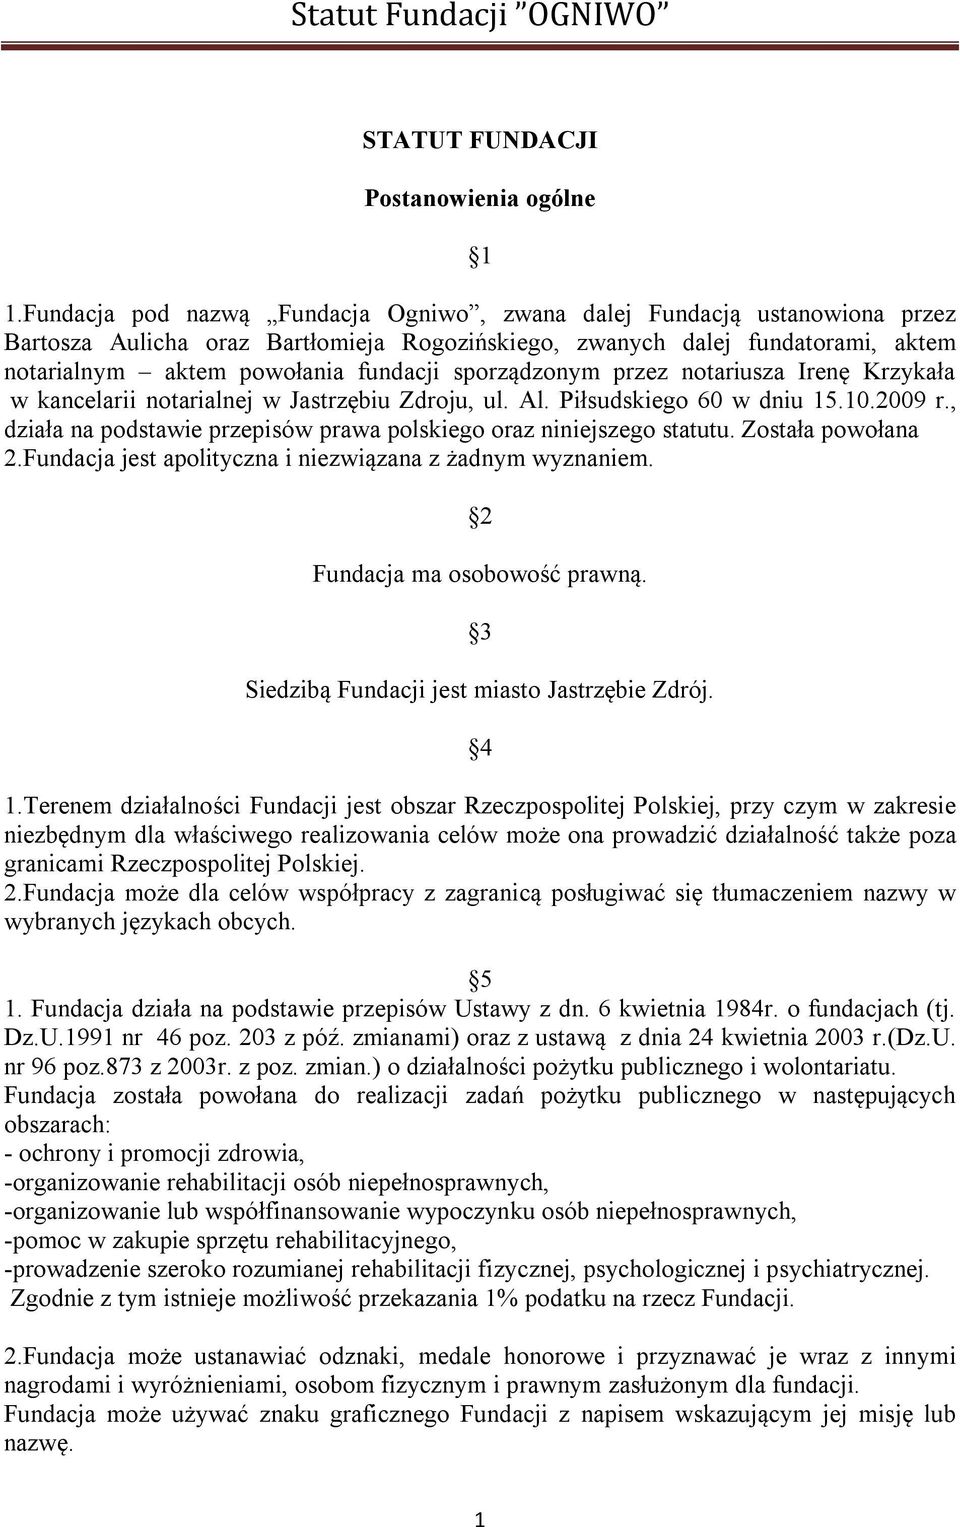 sporządzonym przez notariusza Irenę Krzykała w kancelarii notarialnej w Jastrzębiu Zdroju, ul. Al. Piłsudskiego 60 w dniu 15.10.2009 r.